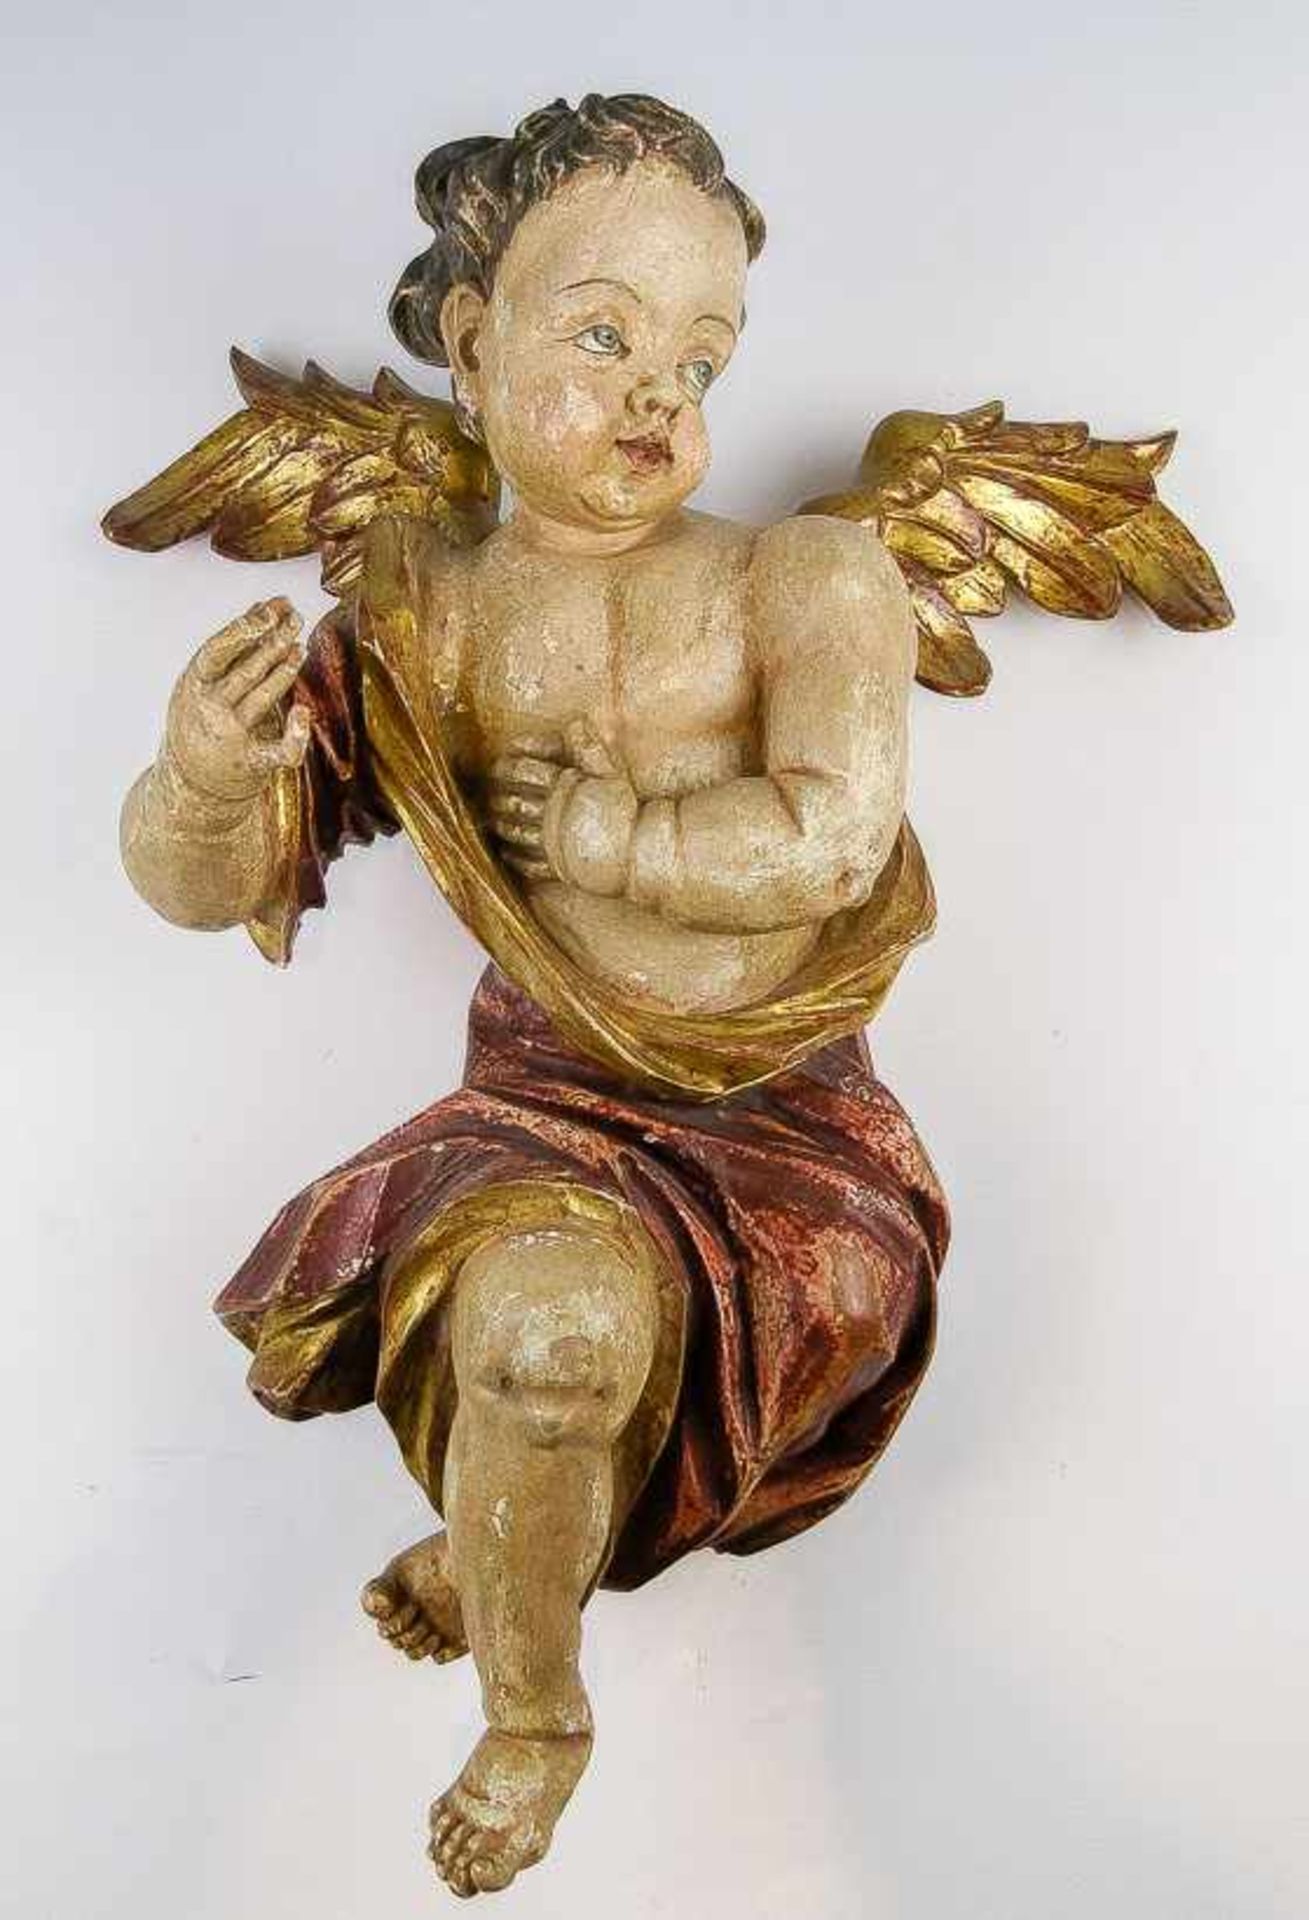 Barocker Engel. Holz, farbig gefasst. Flügel und Gewand teils vergoldet. H. 55 cm. (56410)